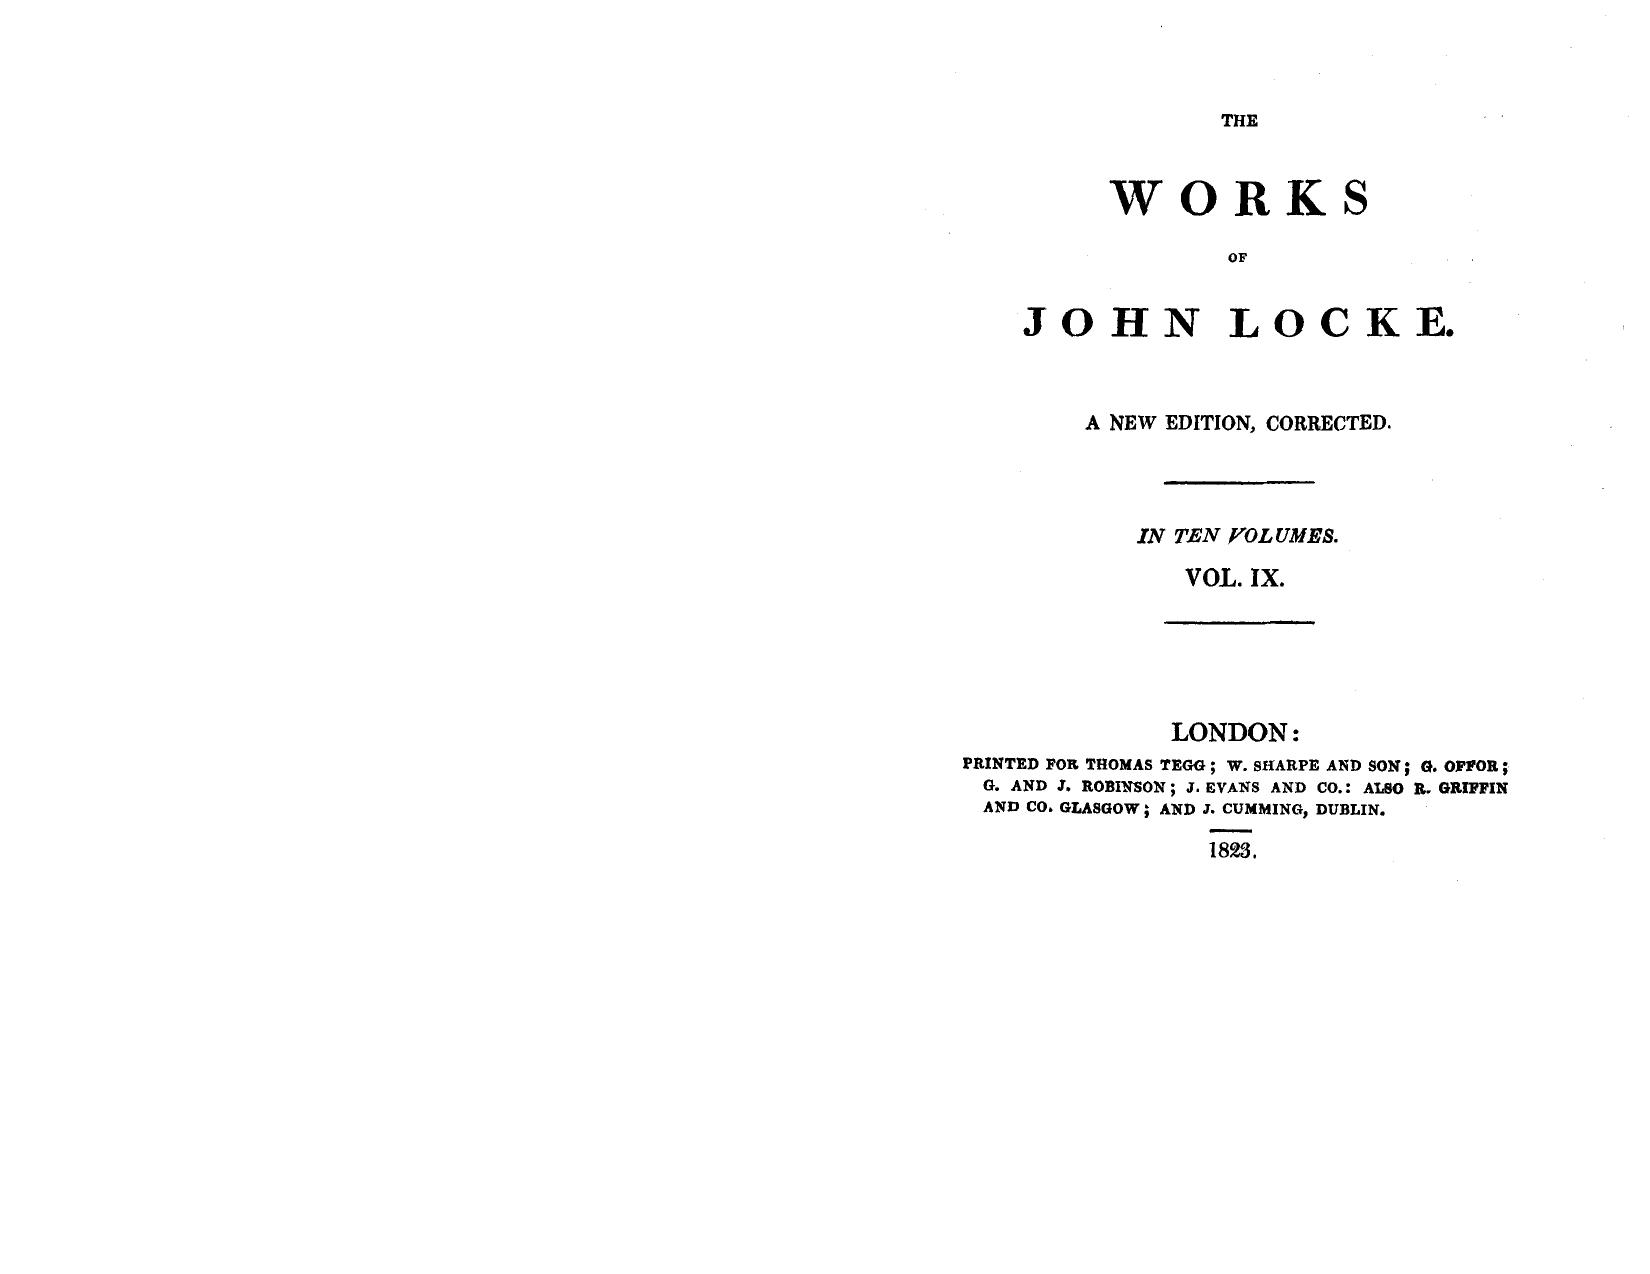 The works of John Locke 09 by John Locke